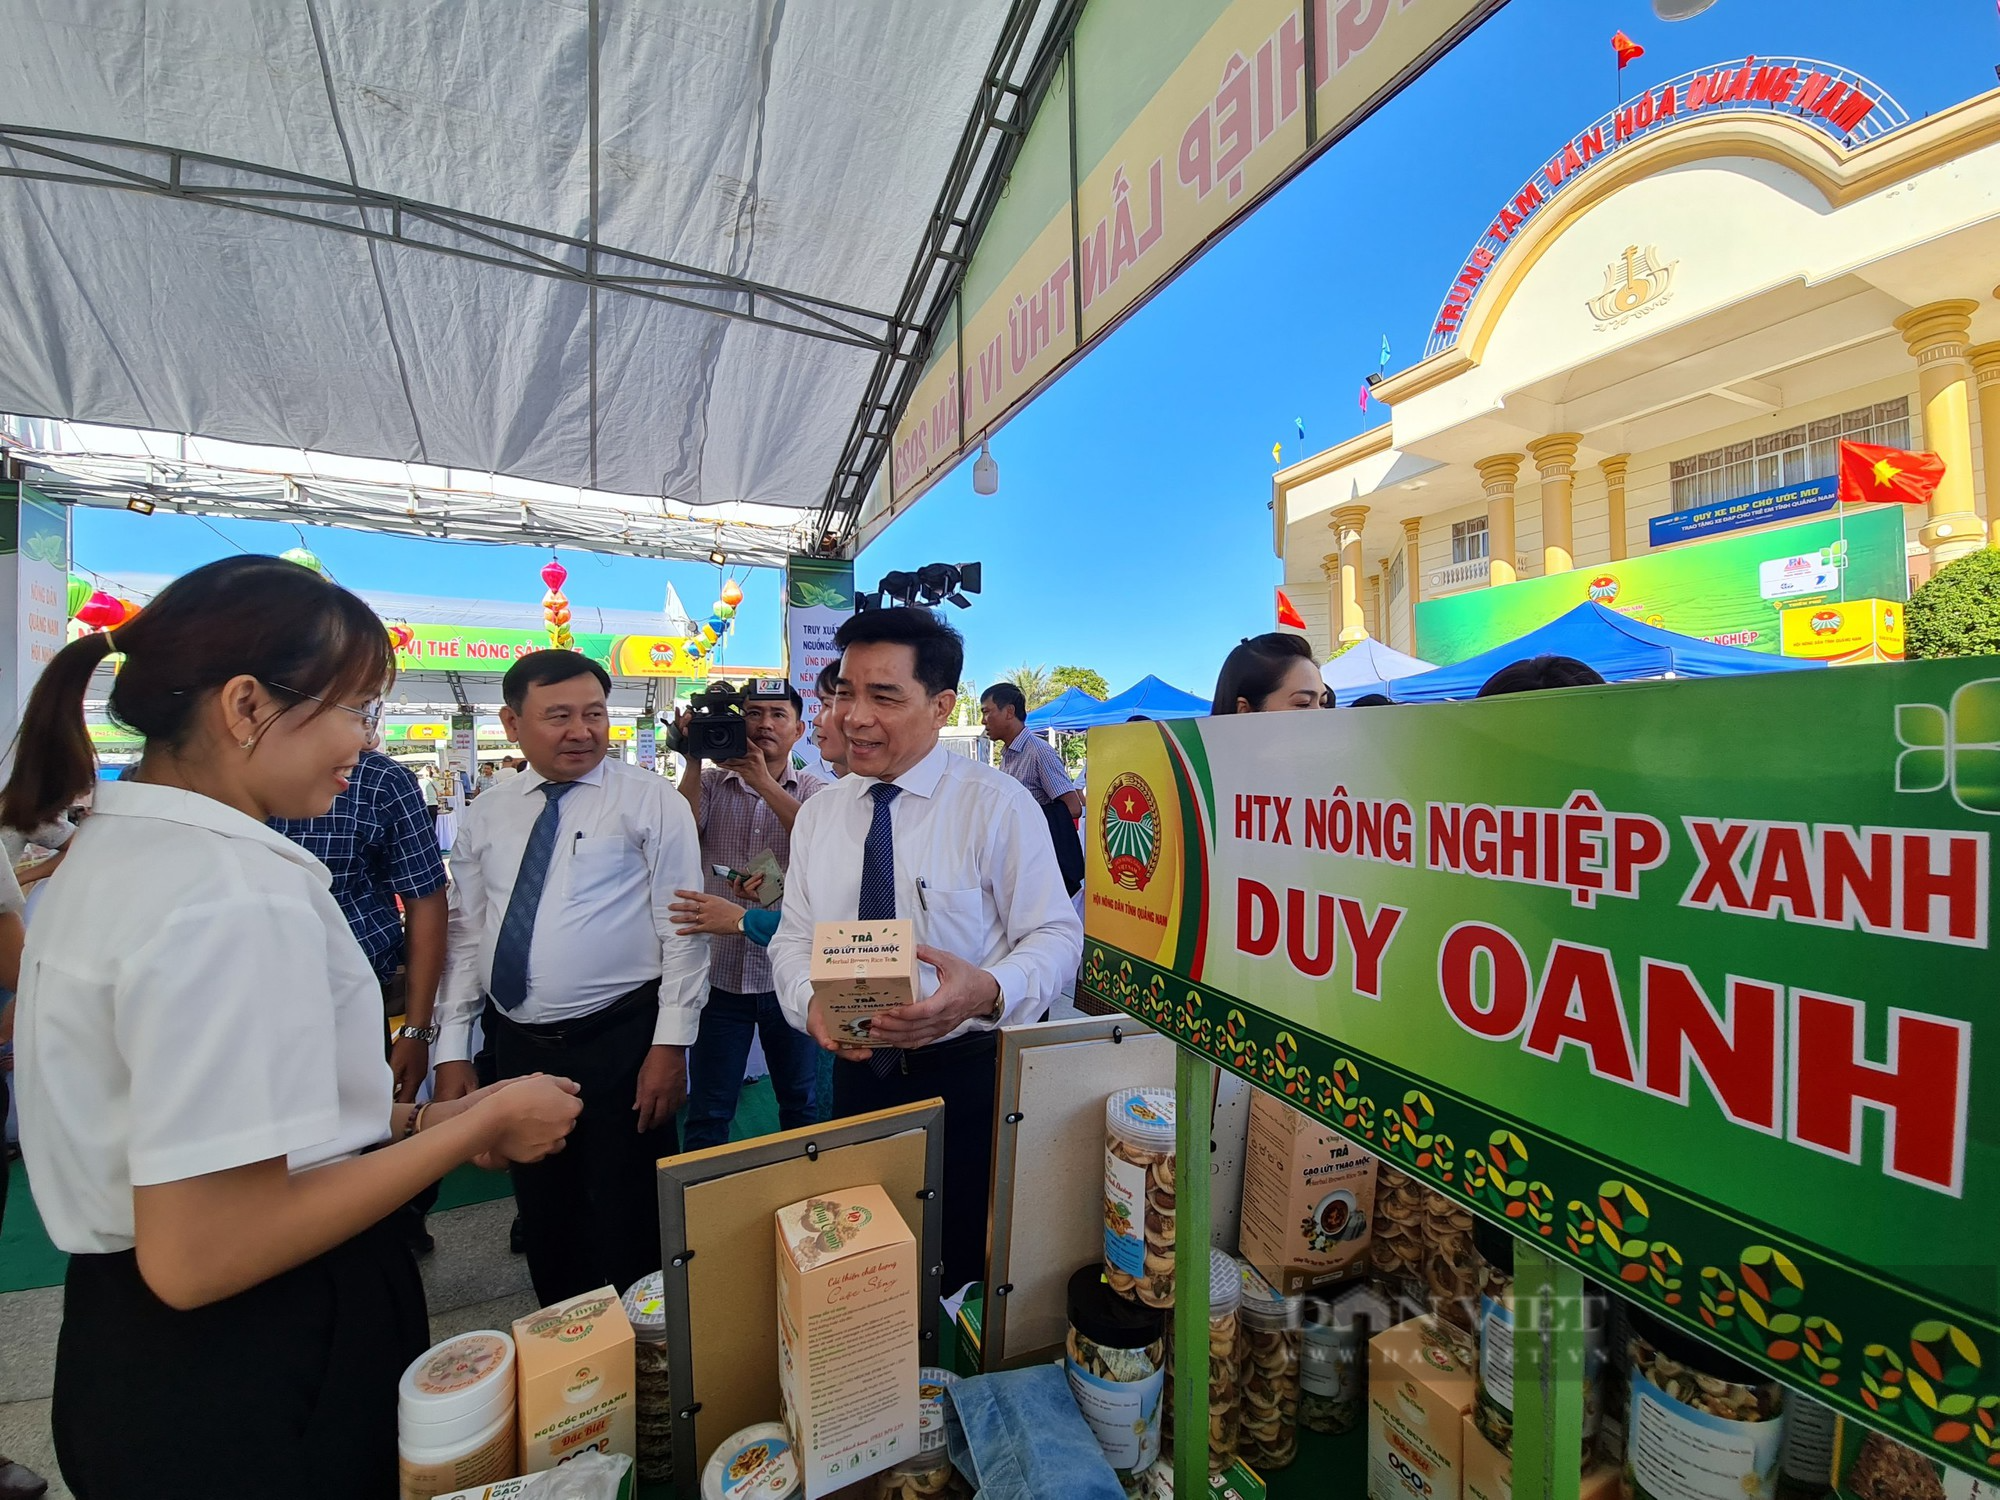 Hội Nông dân Quảng Nam khai mạc hội chợ nông nghiệp với 550 sản phẩm nhà nông các loại - Ảnh 3.